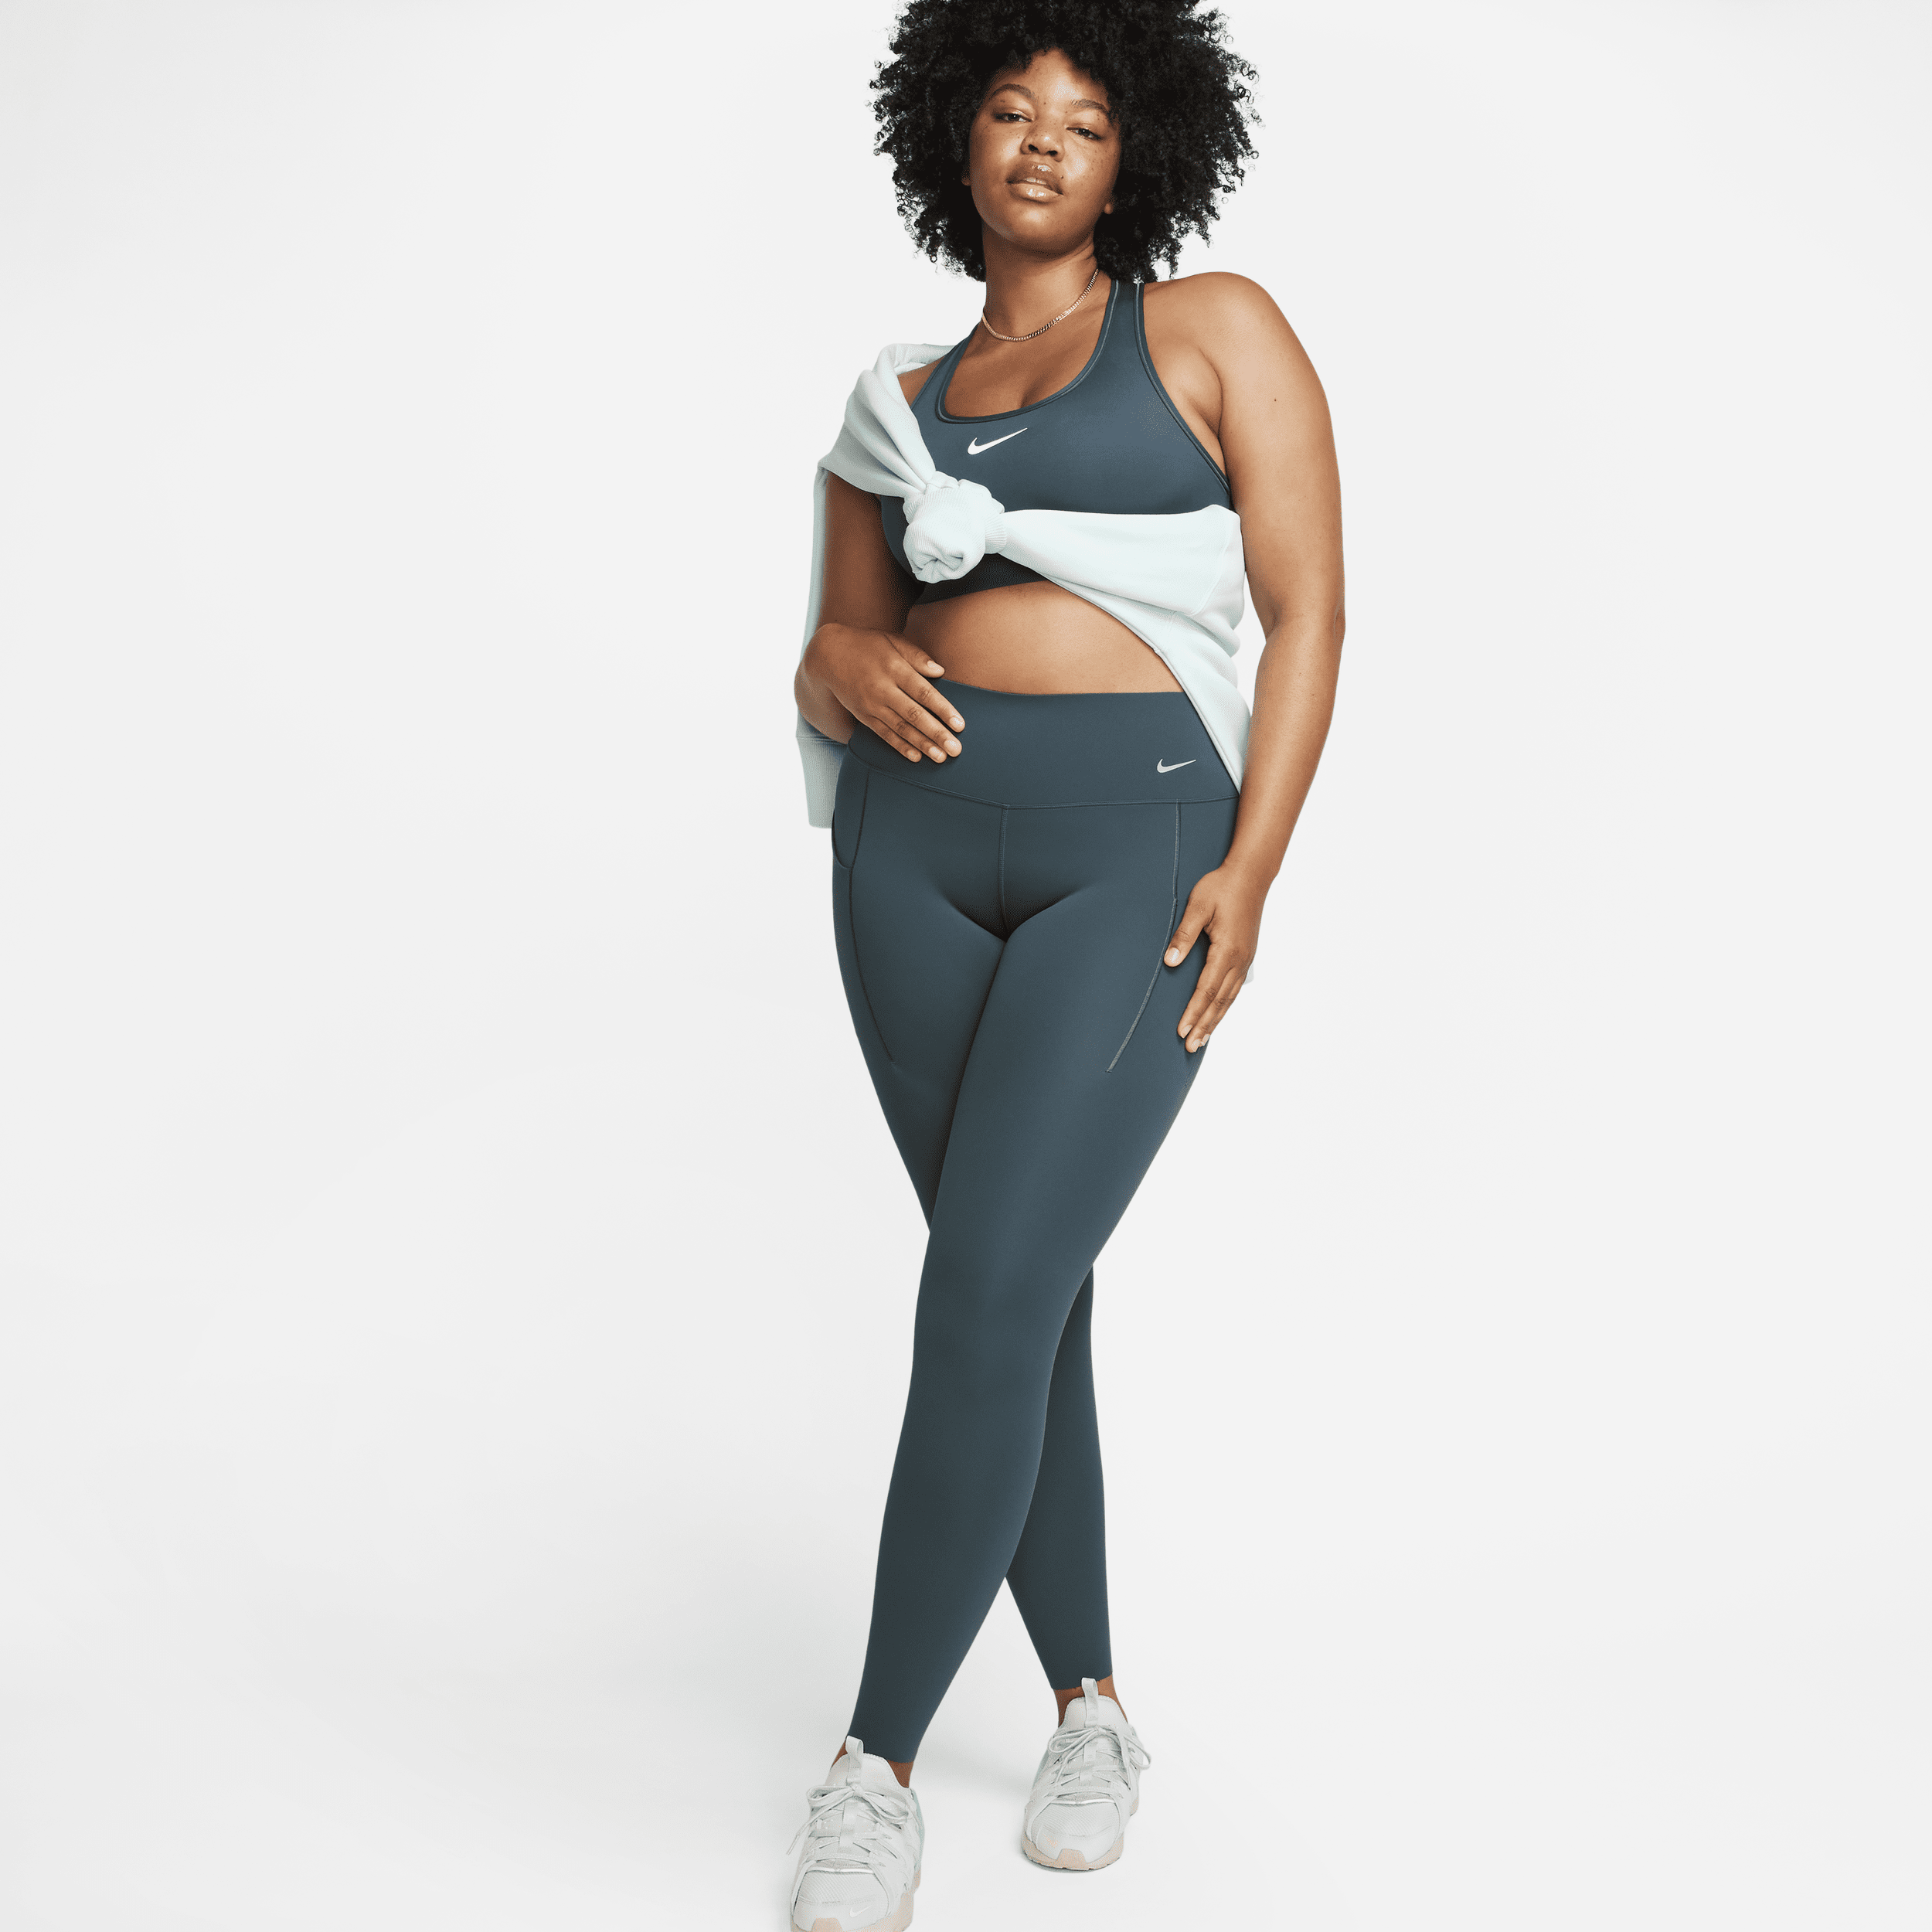 Nike Universa-leggings i fuld længde med medium støtte, mellemhøj talje og lommer til kvinder - grøn